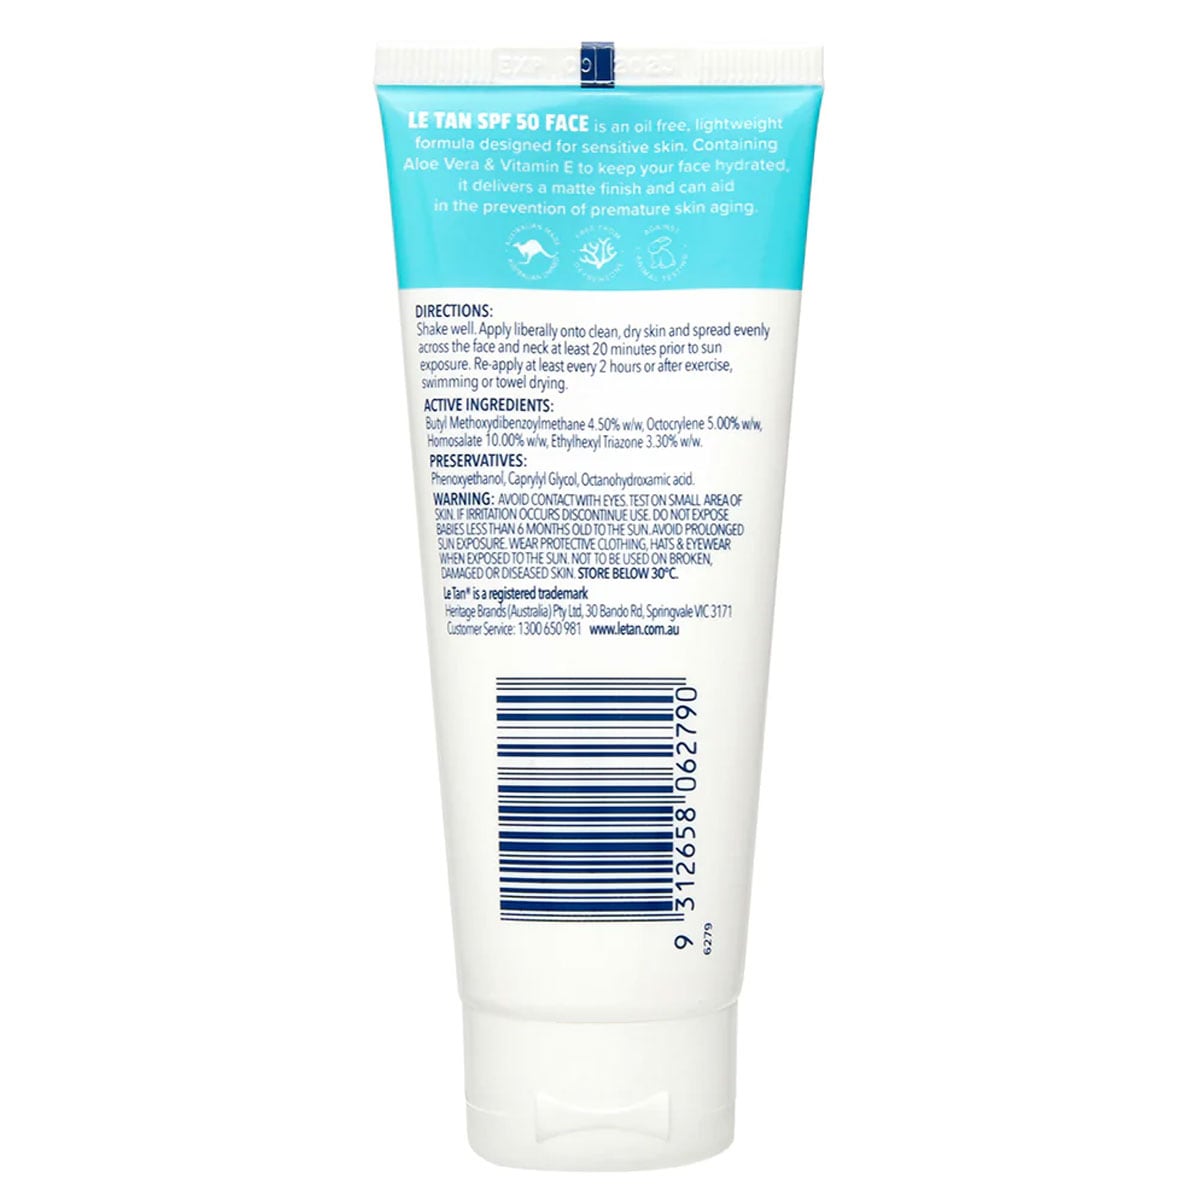 Le Tan SPF50+ Face Sensitive Sunscreen 70ml